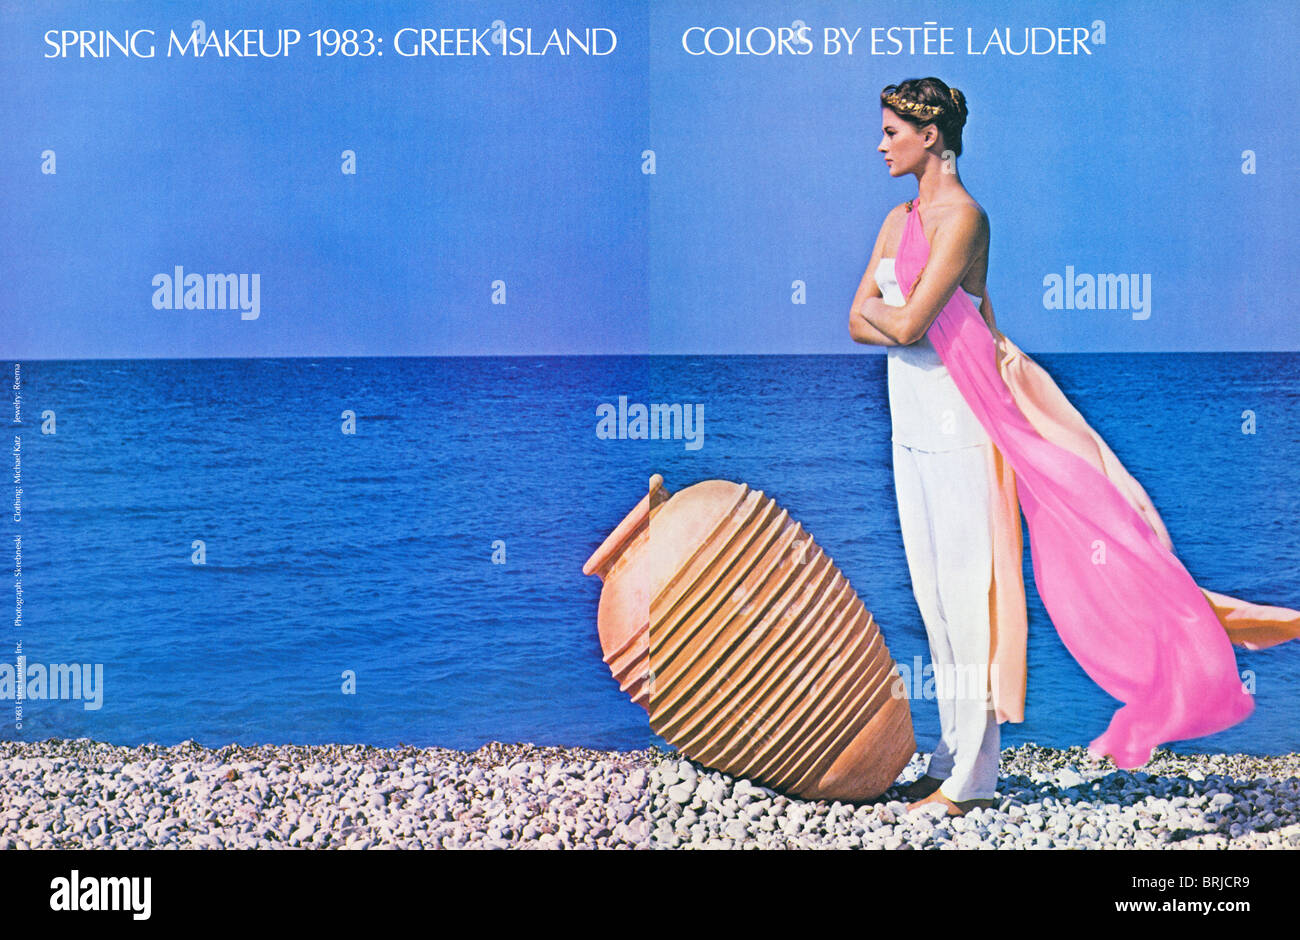 Pubblicità a colori sparsi per Estee Lauder su due pagine in rivista americana di moda circa 1983 Foto Stock